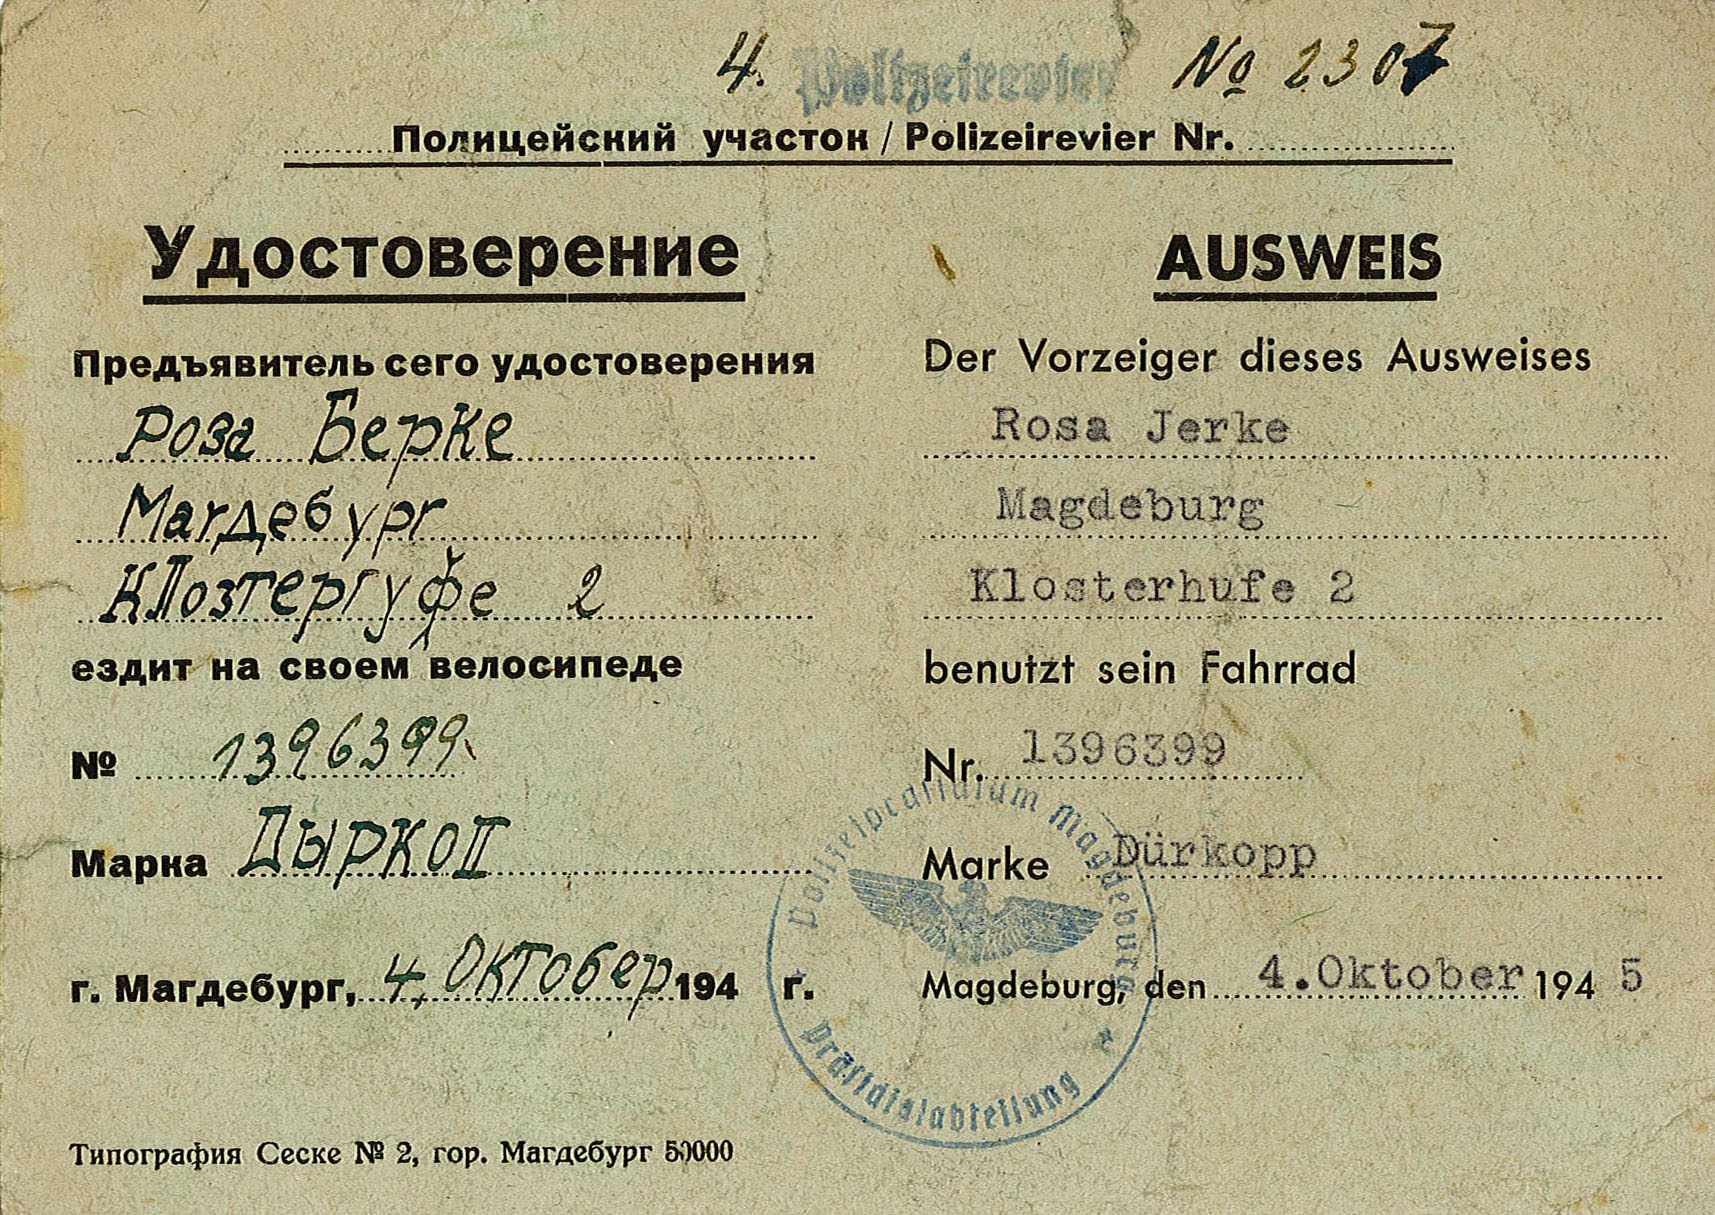 Ausweis des Polizeipräsidiums Magdeburg für Rosa Jerke zur Fahrradnutzung, 1945 (Museum Wolmirstedt RR-F)